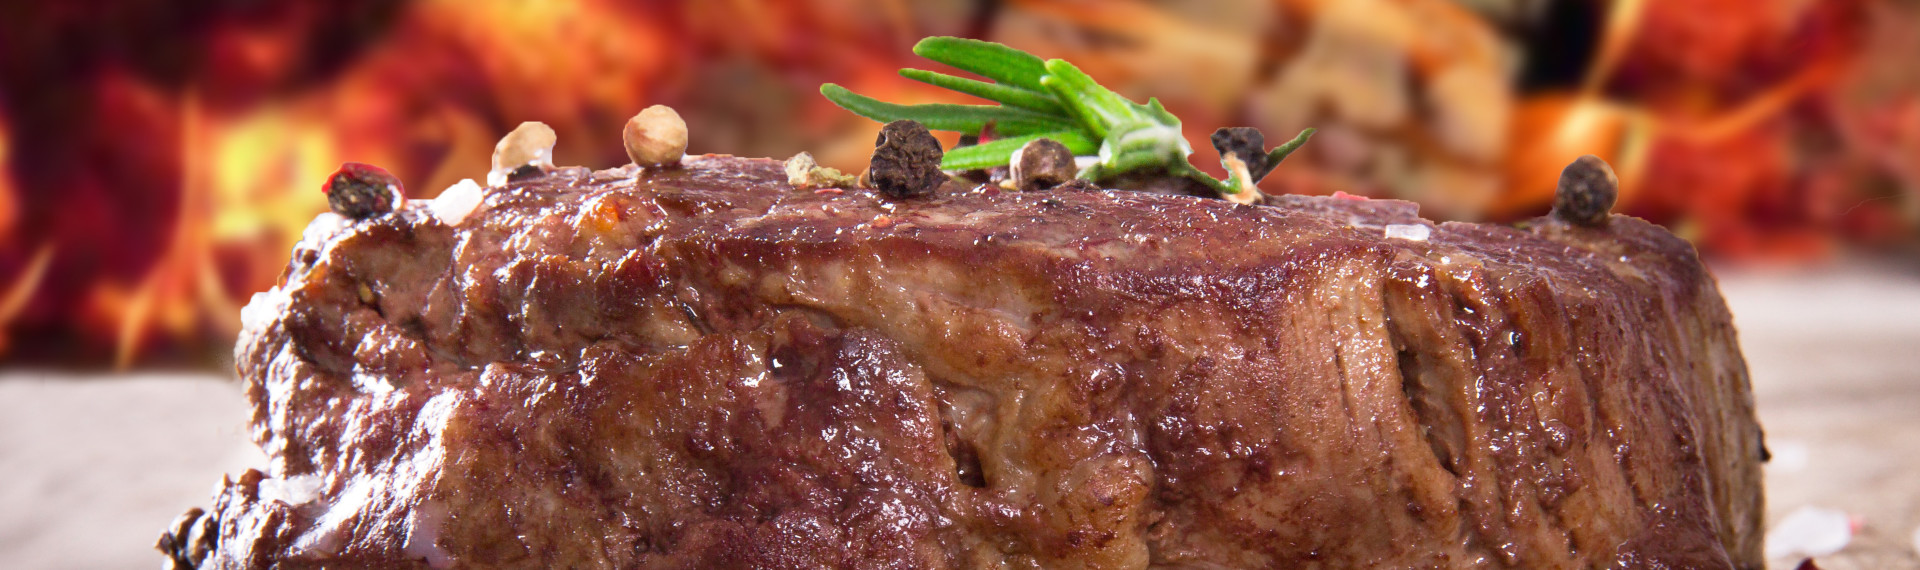 Brasiliansk Rodizio Barbecue - 10 retter og masser af kød!